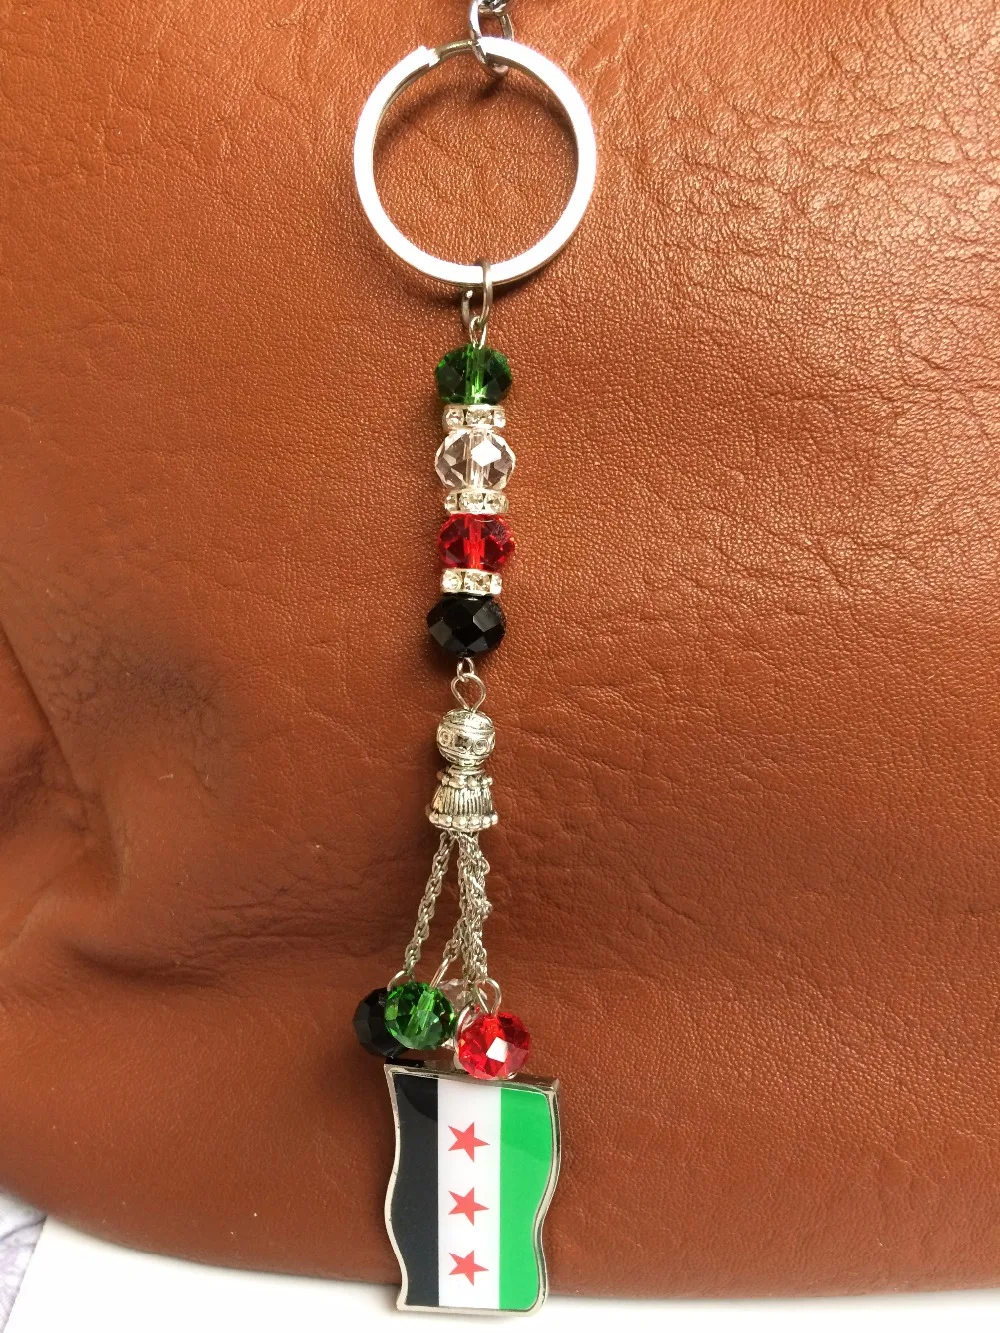 Syrien сирийский флаг ювелирные изделия брелок для ключей Автомобильный ключ кольцо подвеска с украшением в виде кристаллов бусины Сирийская, дамская сумочка, женская сумочка для ключей карта хорошие подарки Syrie баннер